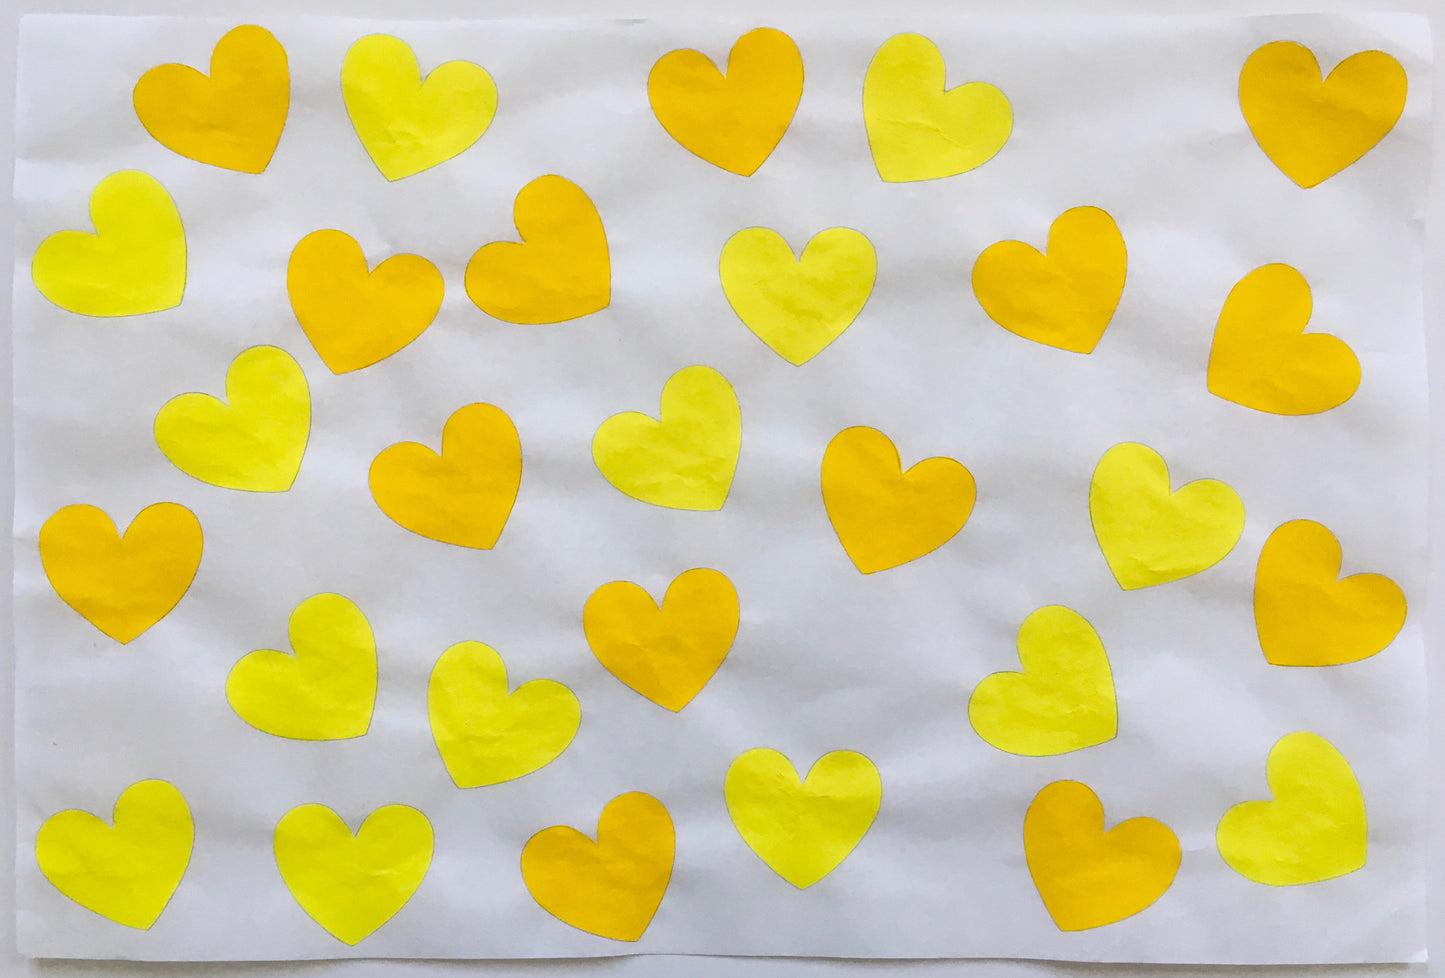 28 Hearts, Yellows